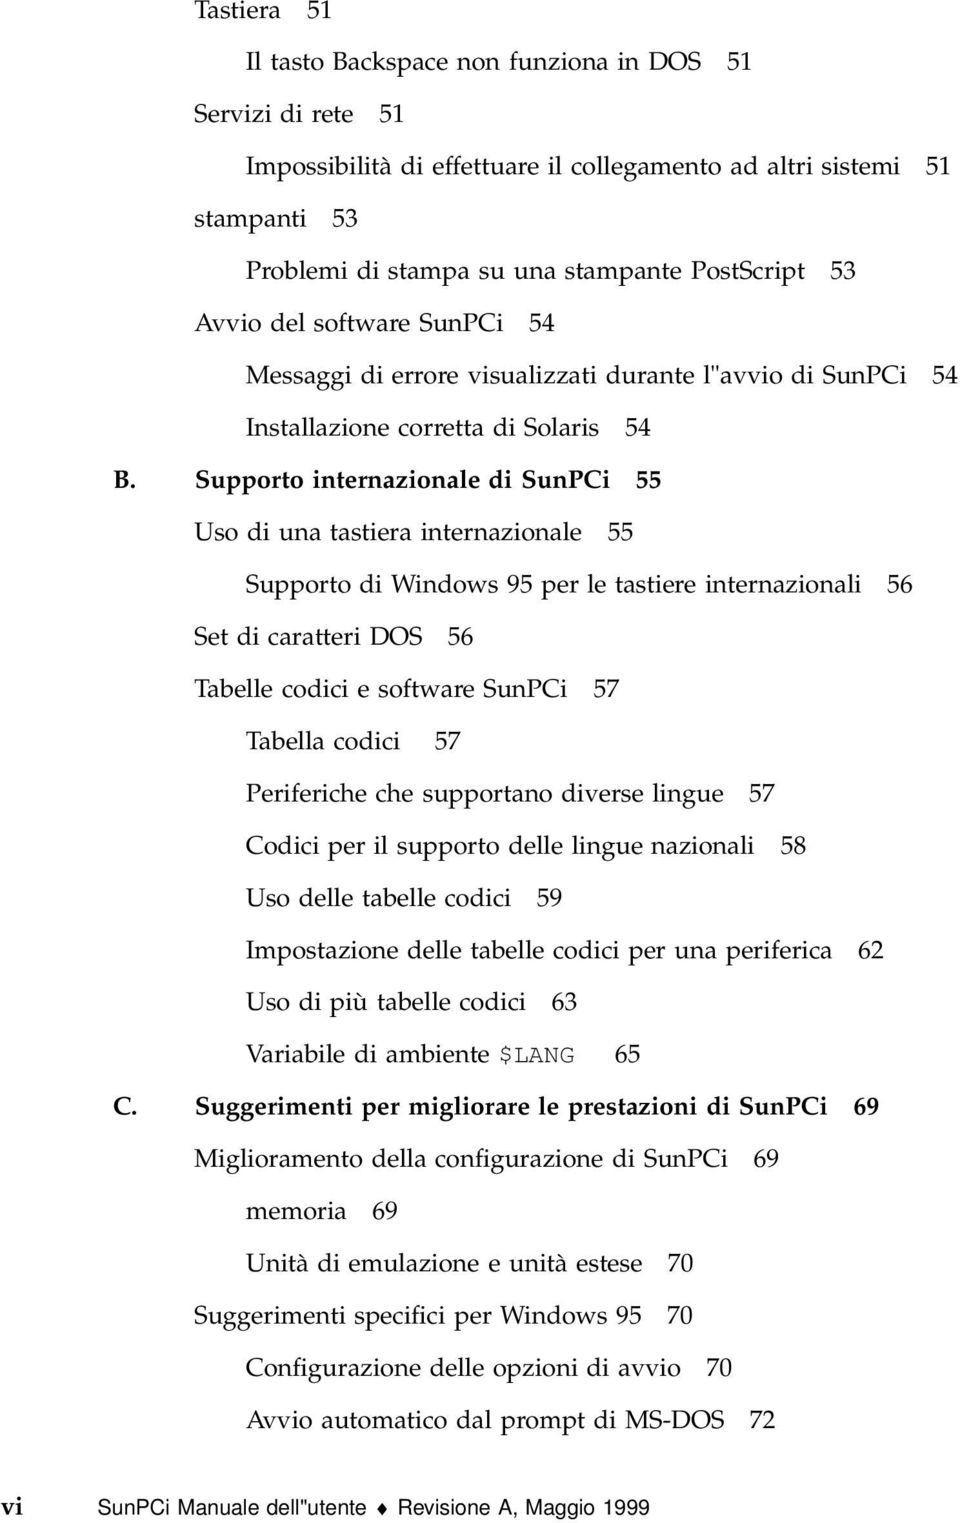 Supporto internazionale di SunPCi 55 Uso di una tastiera internazionale 55 Supporto di Windows 95 per le tastiere internazionali 56 Set di caratteri DOS 56 Tabelle codici e software SunPCi 57 Tabella